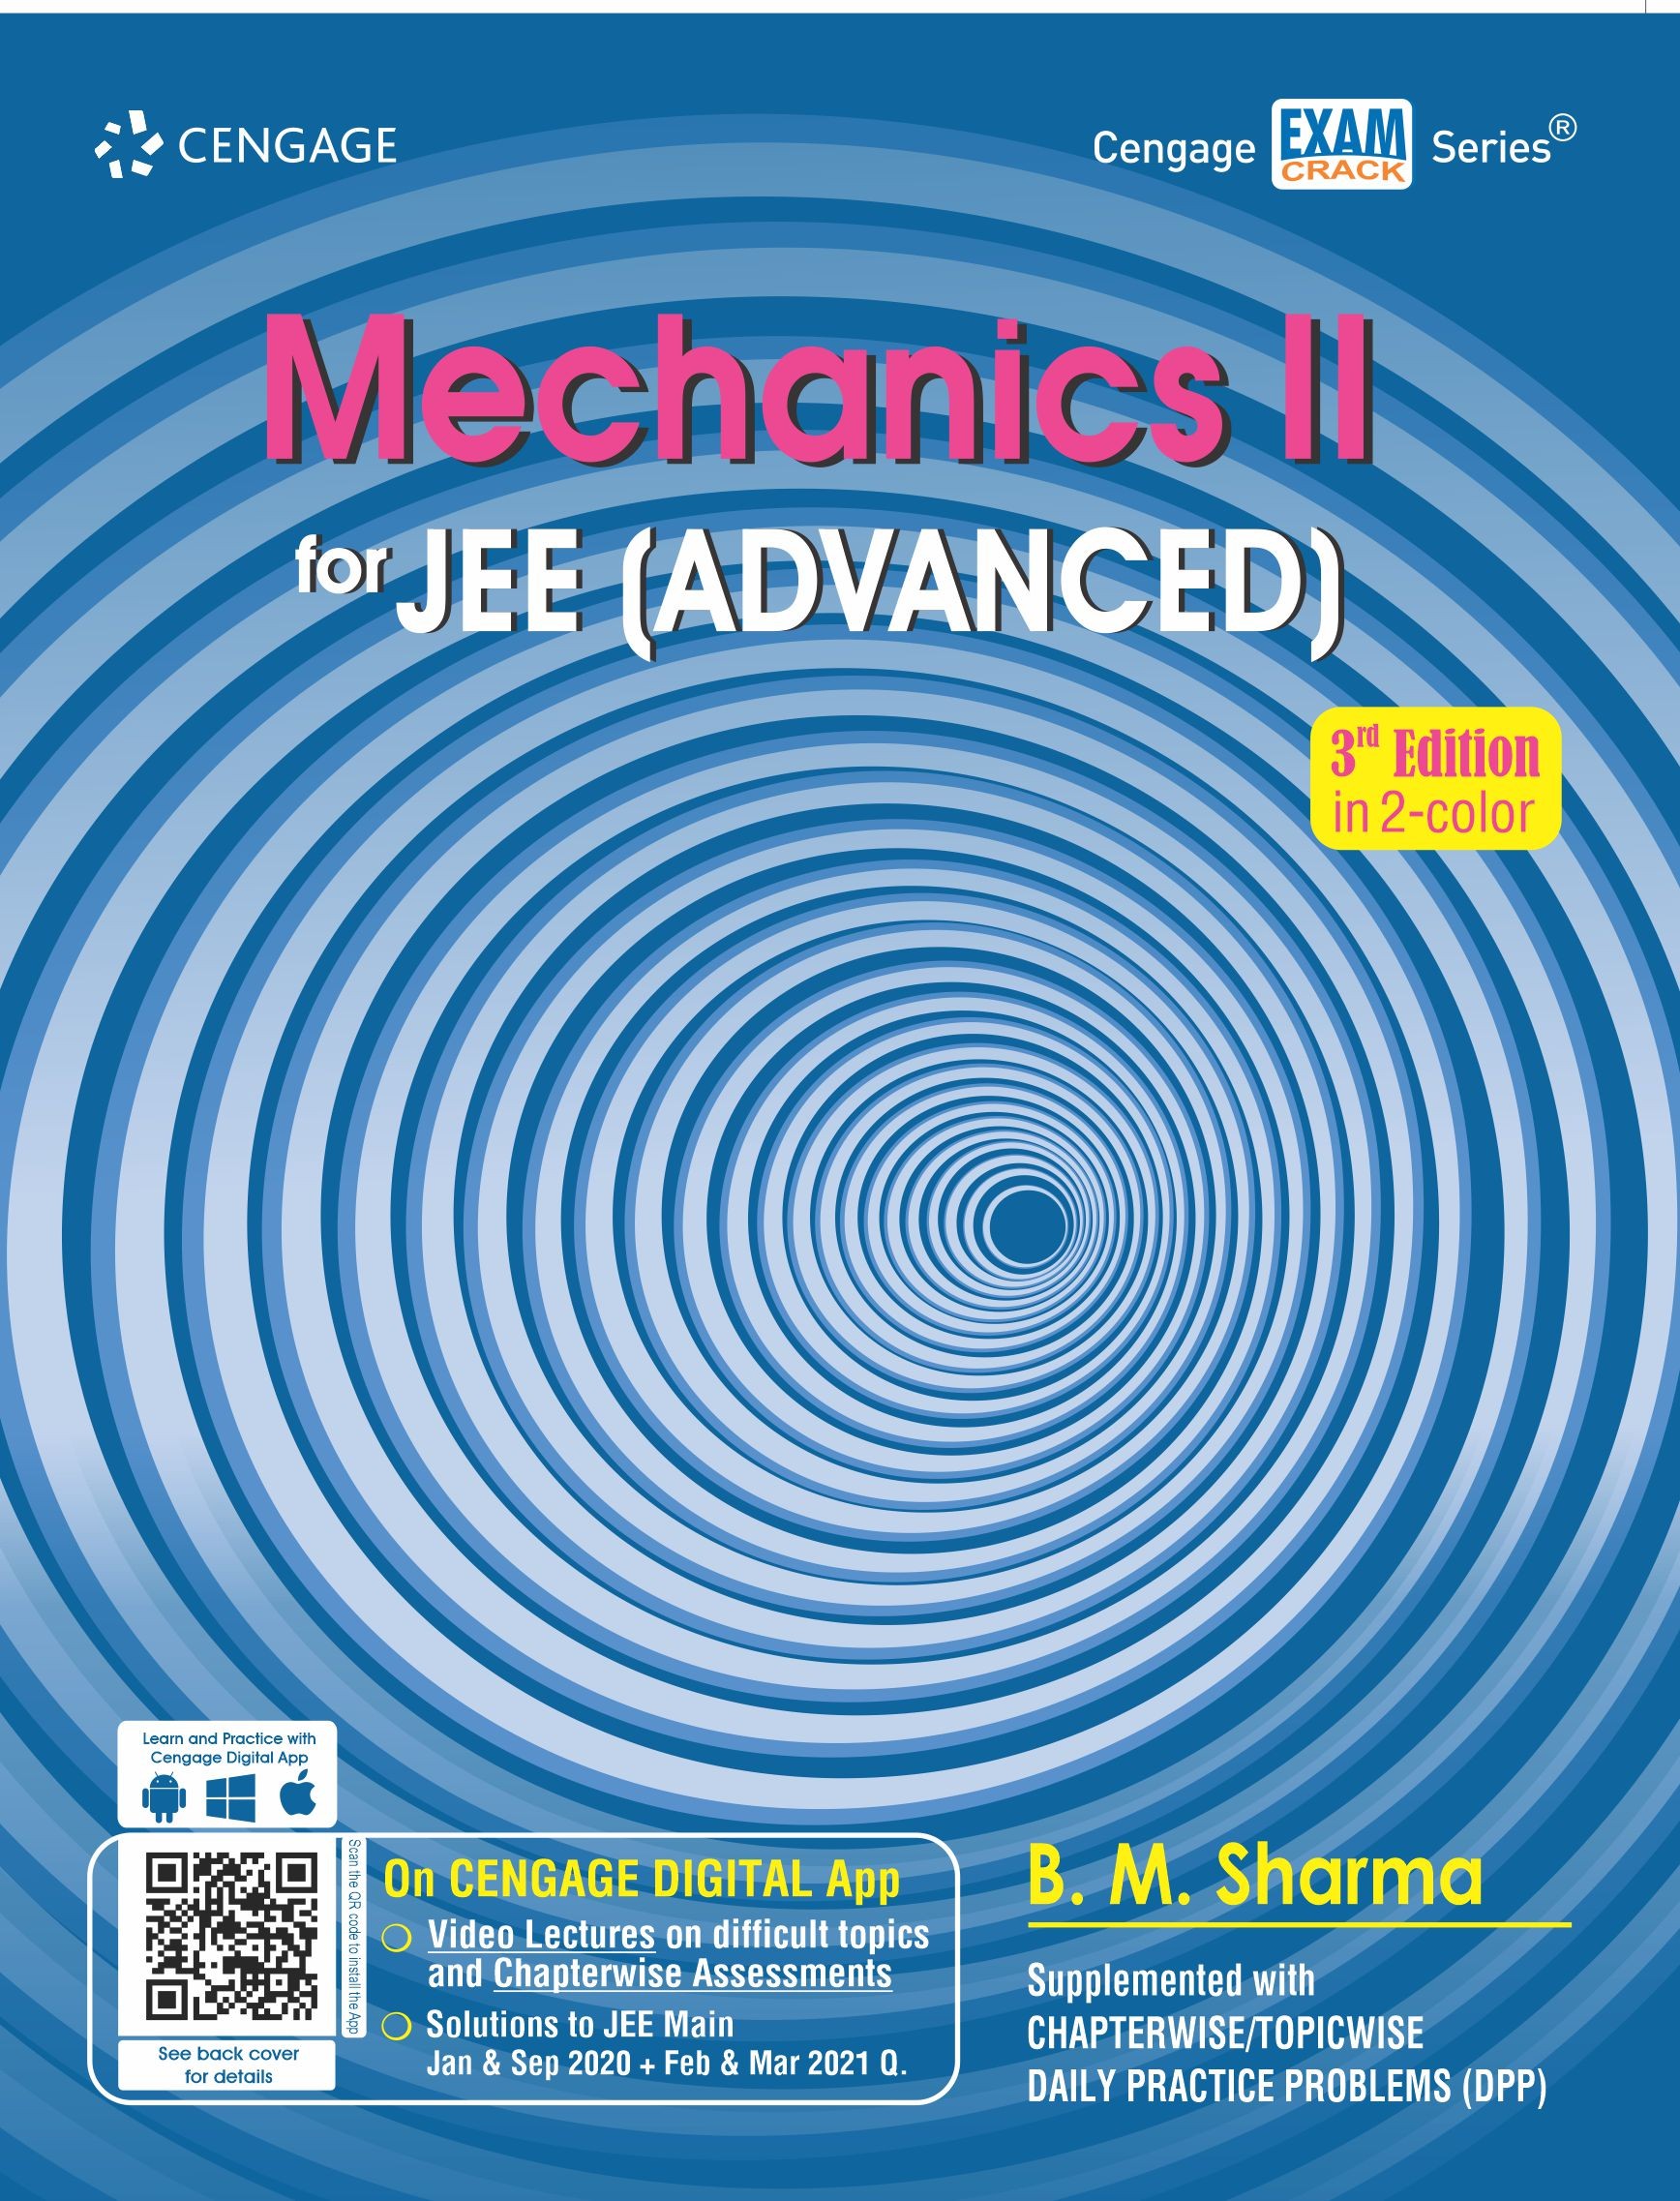 Cengage Mechanics II for JEE (Advanced), 3e By B. M. Sharma